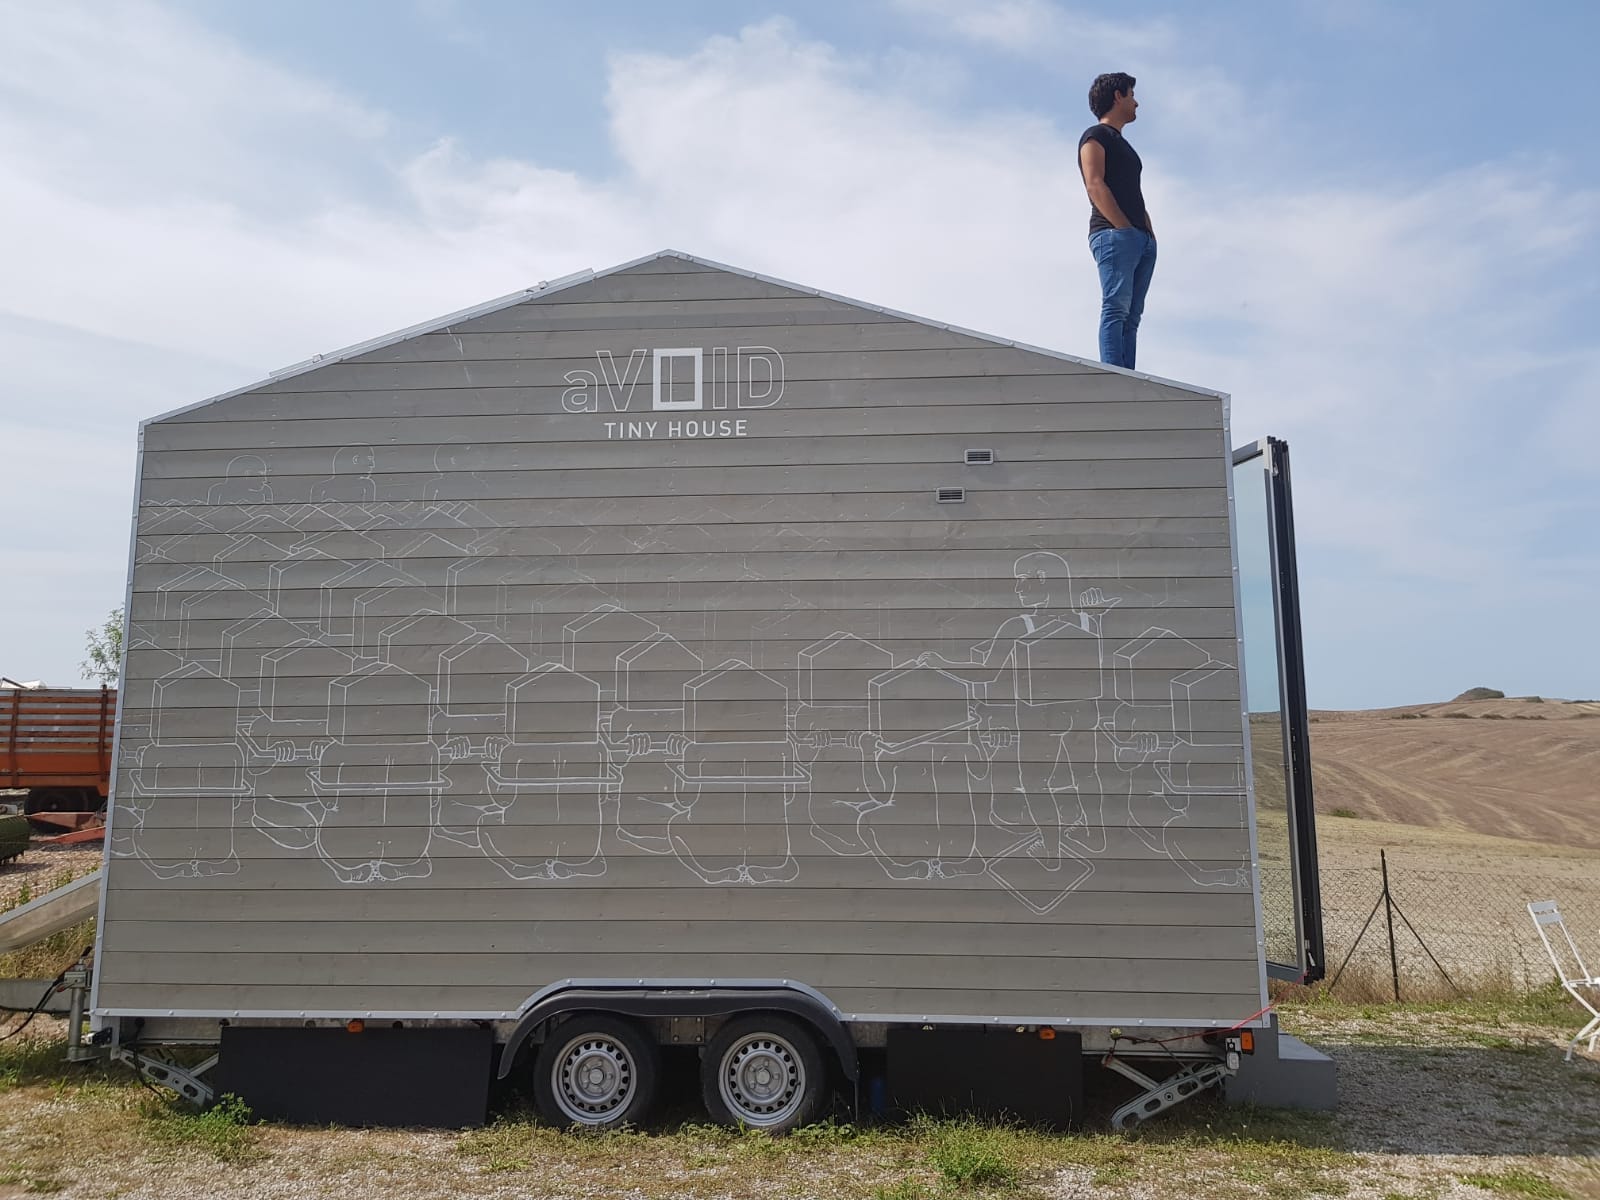 La Tiny House sbarca a Siena: una casa mobile di 9 metri quadri